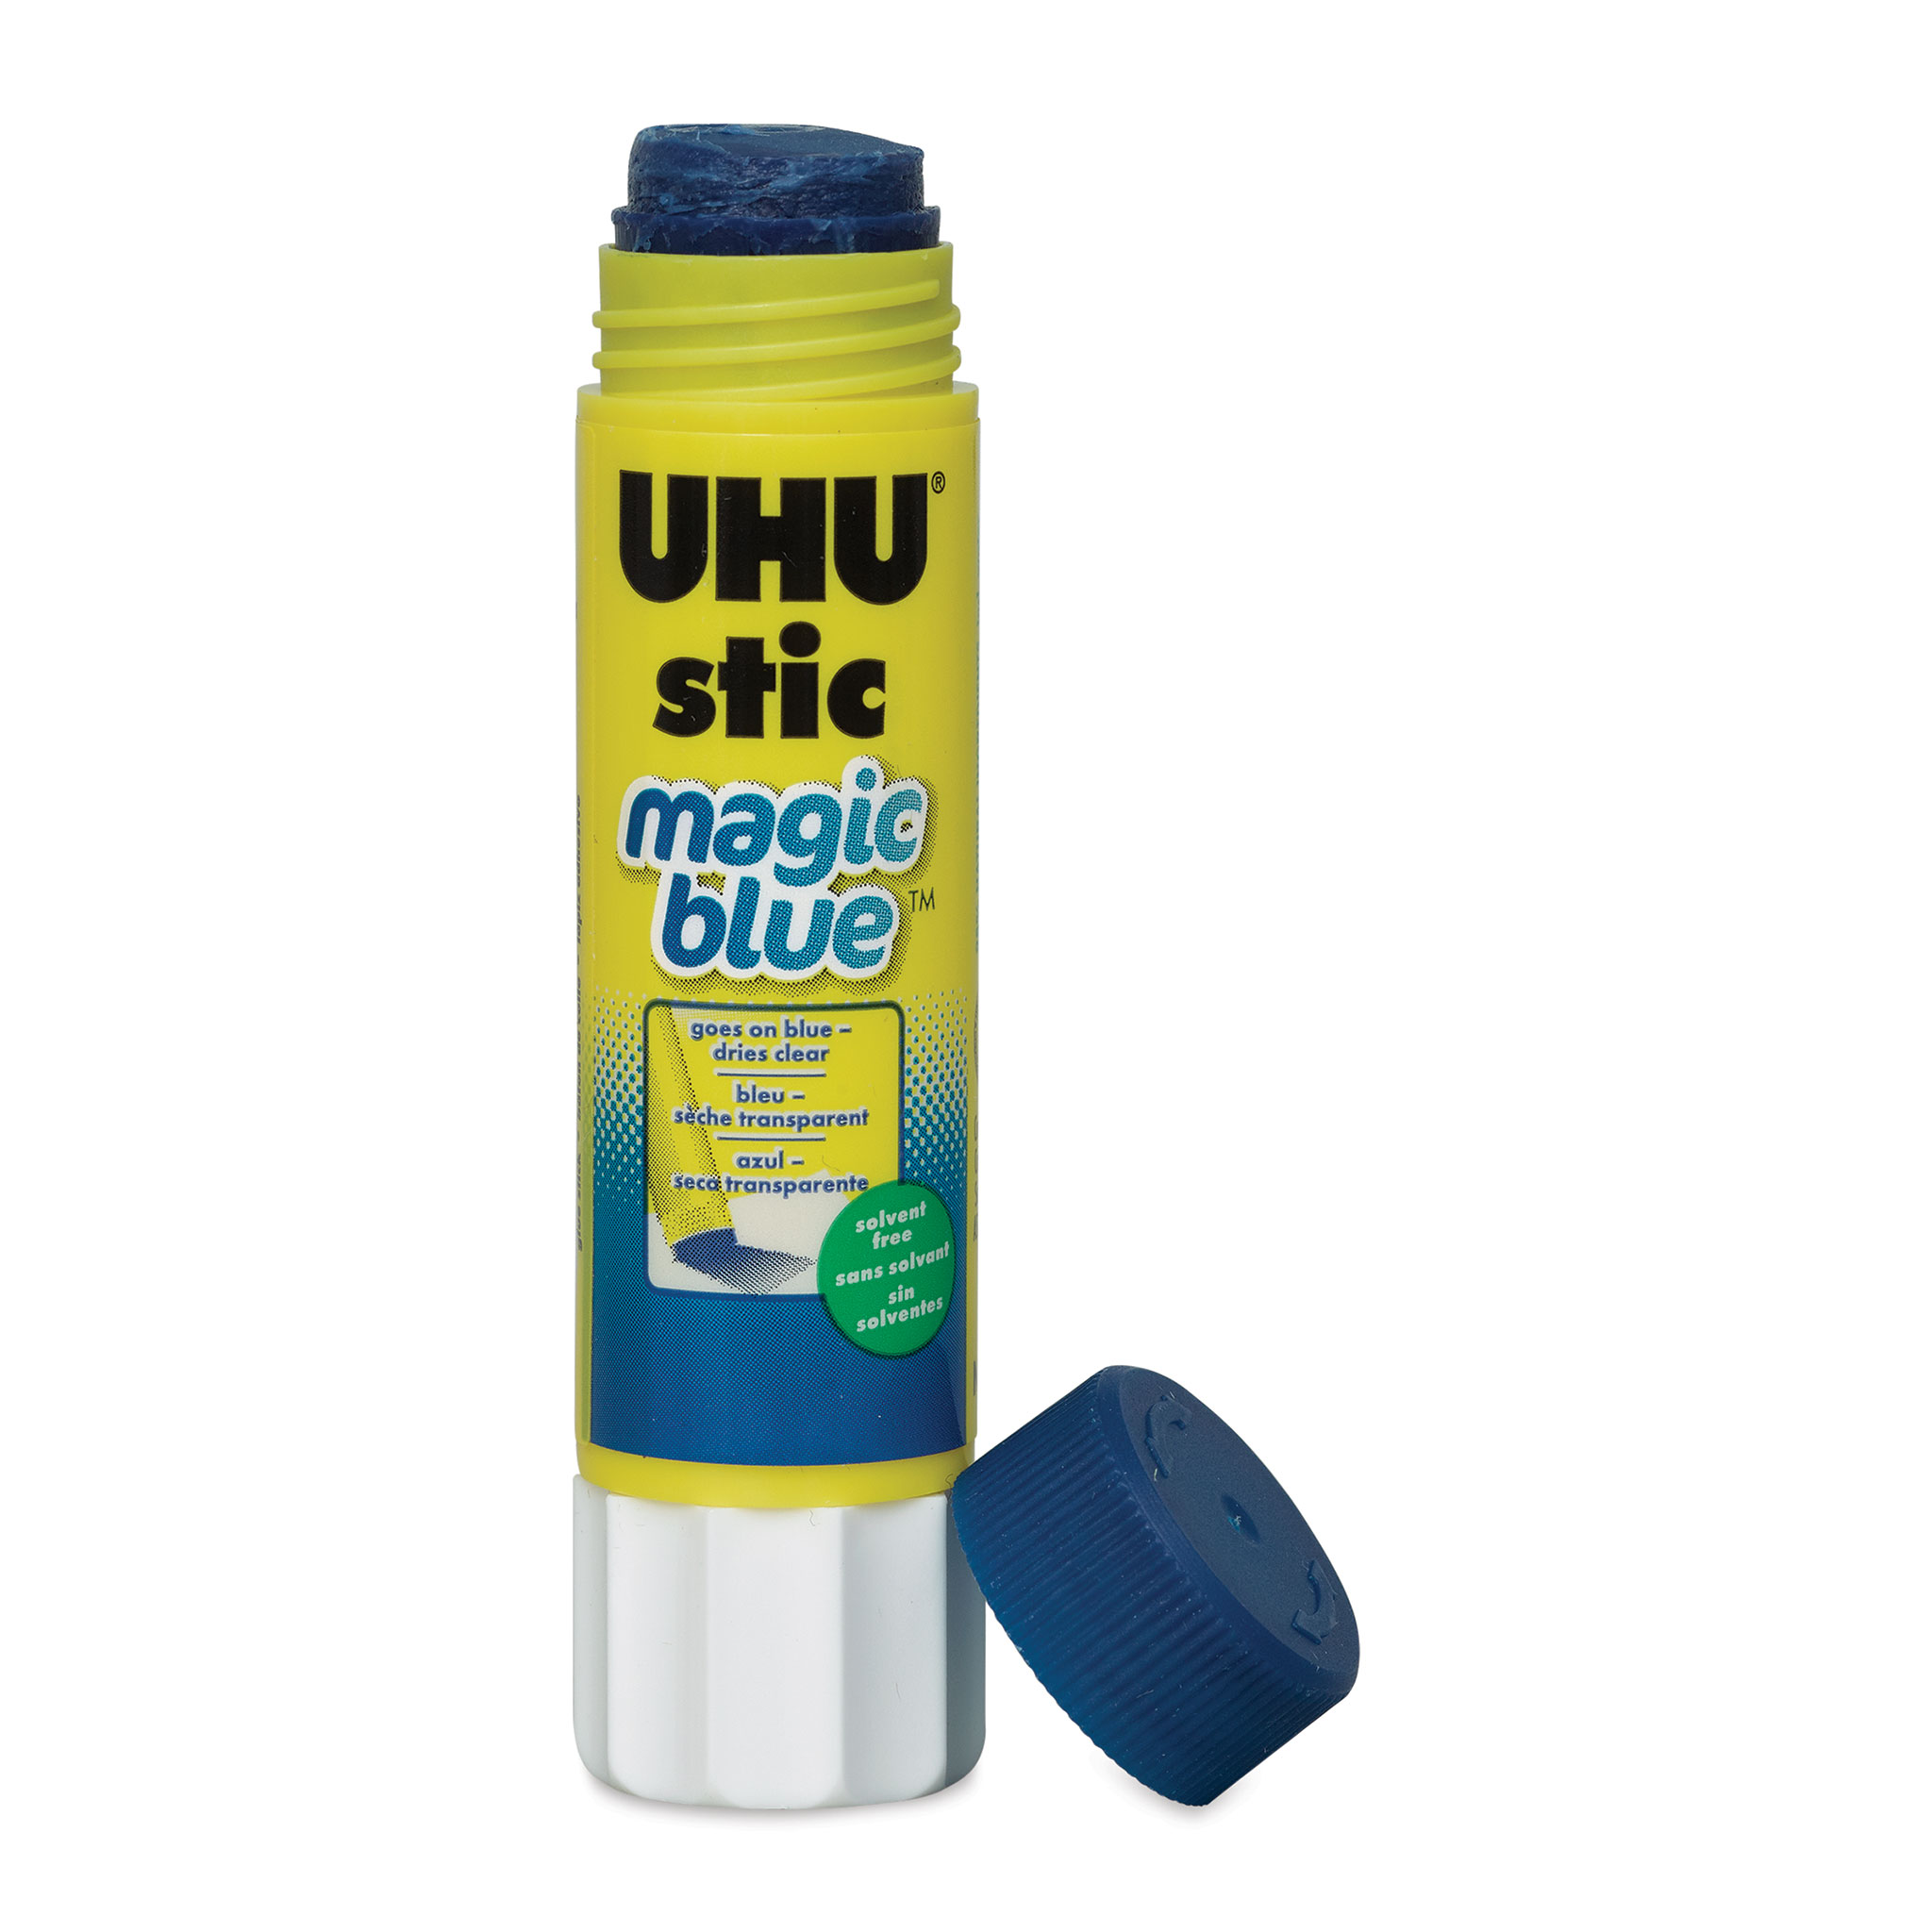 UHU Stic Magic Blue Glue Sticks